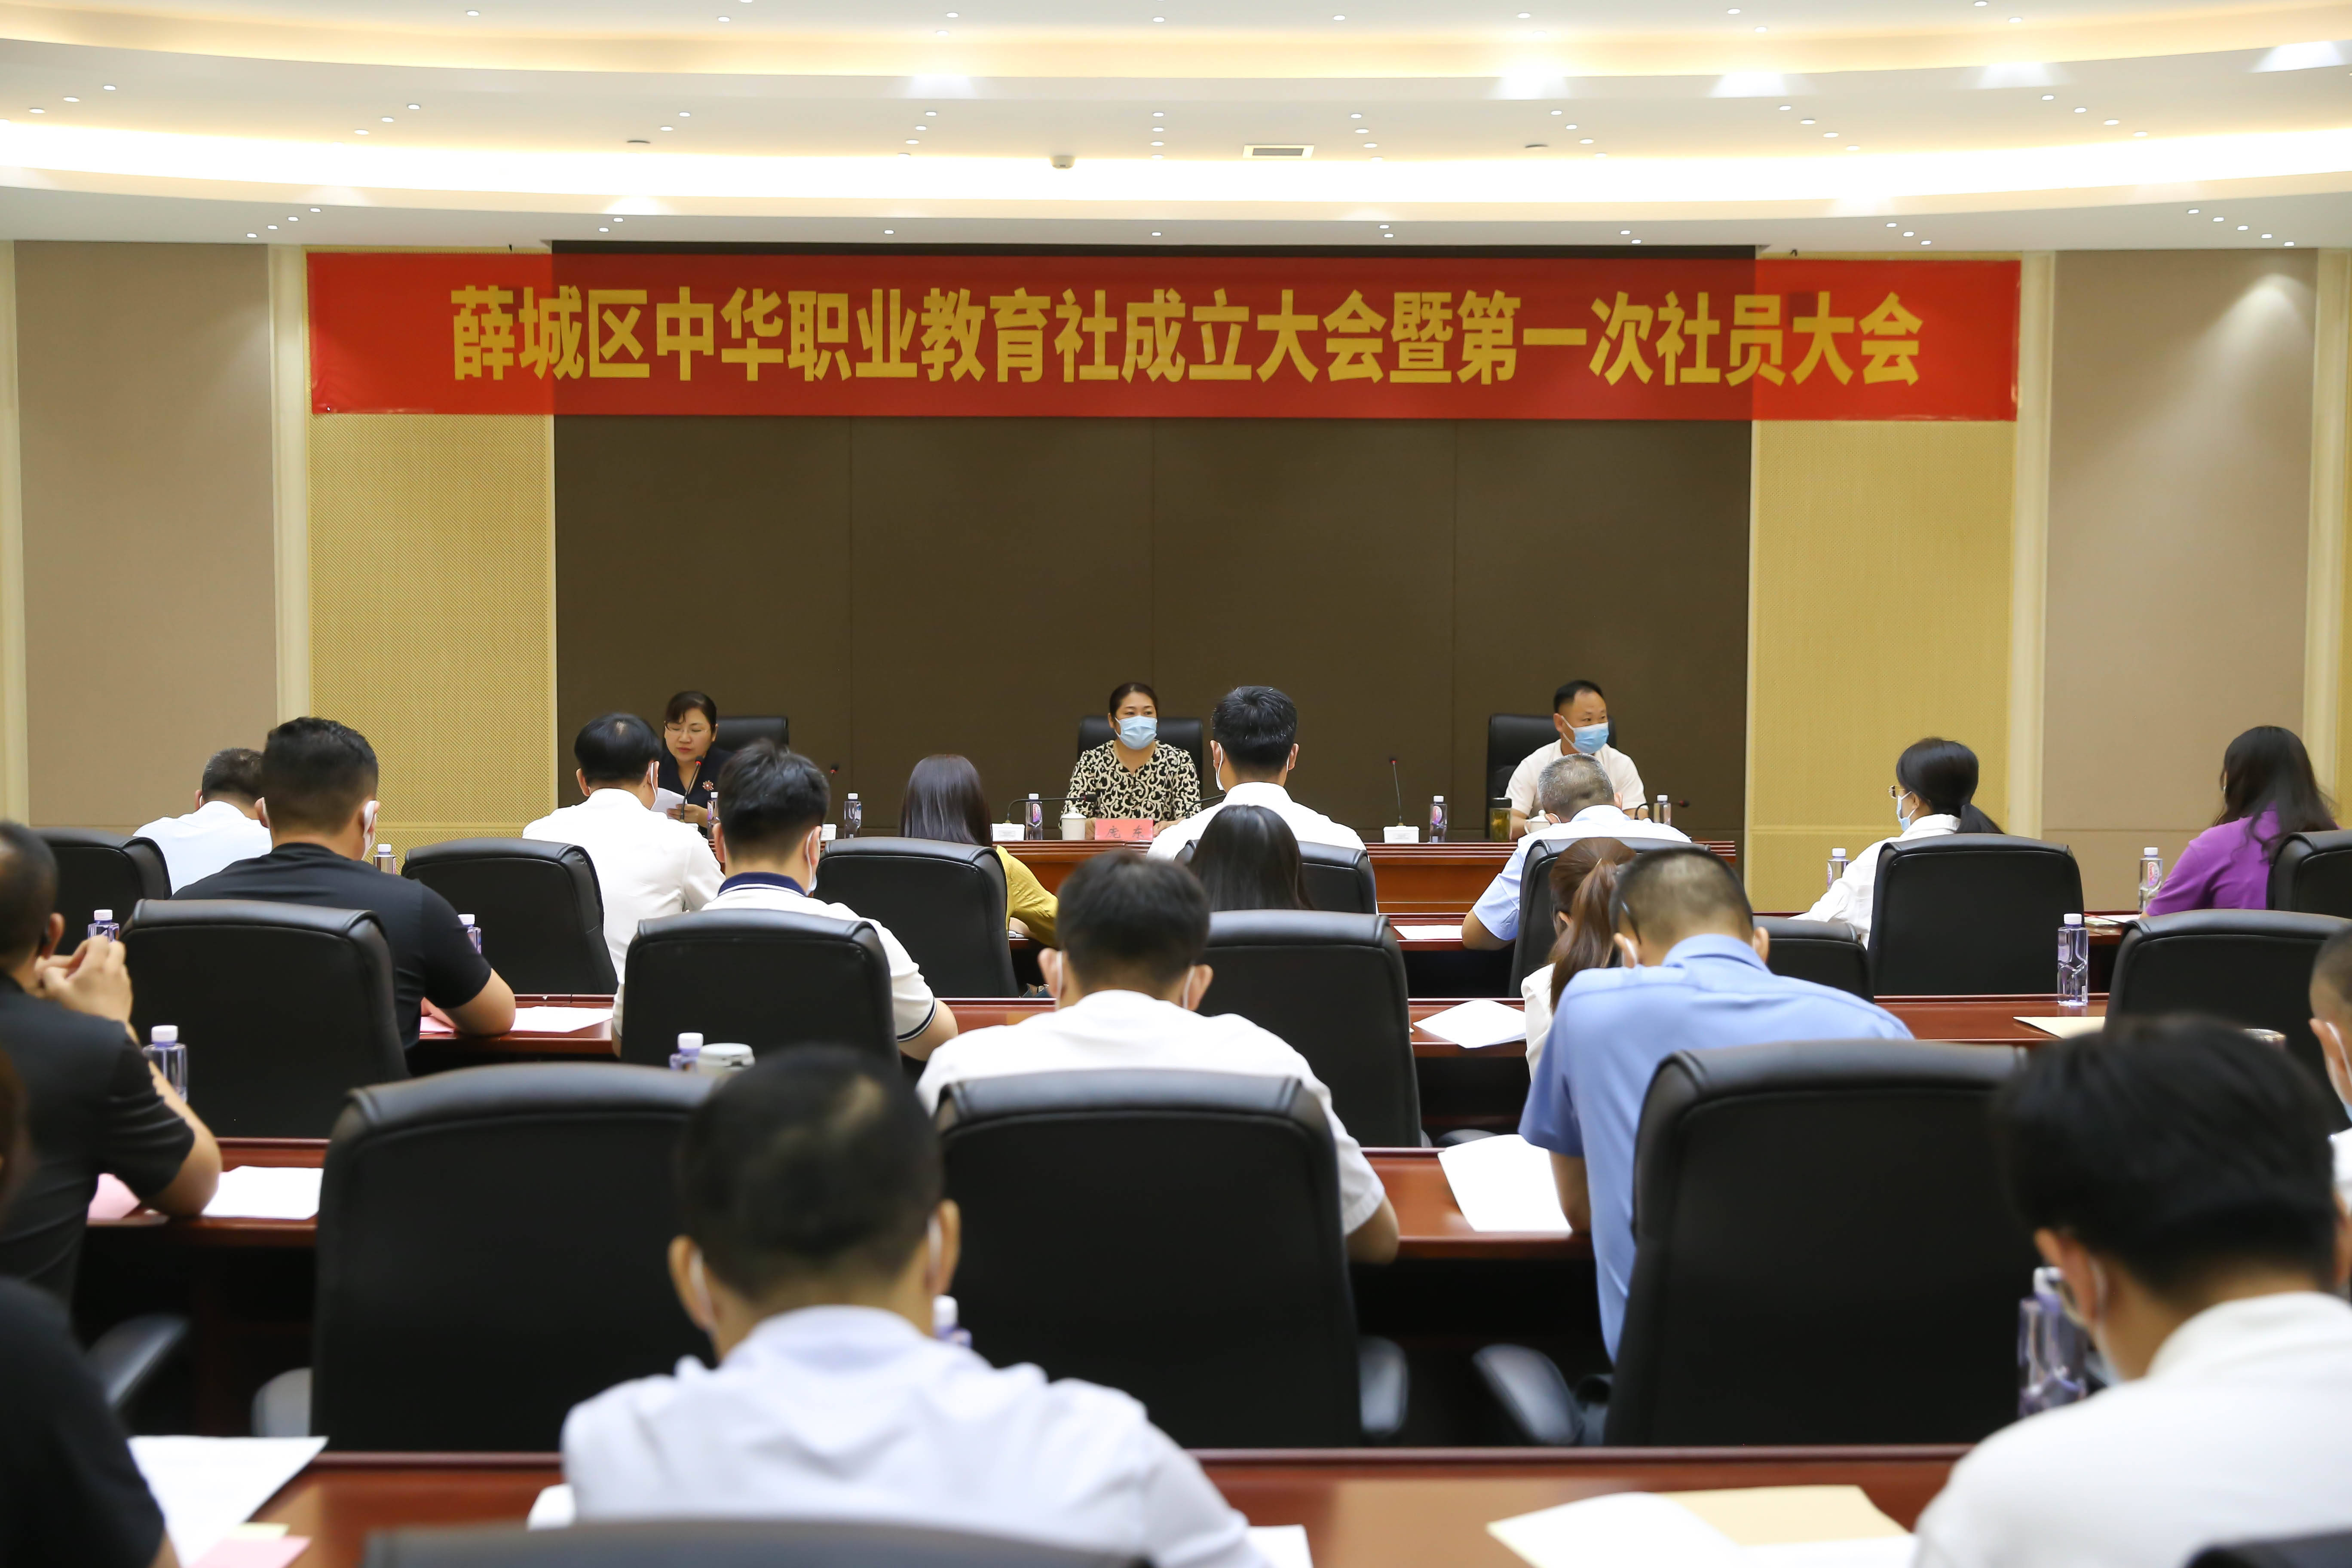 枣庄市薛城区中华职业教育社成立大会暨第一次社员大会召开